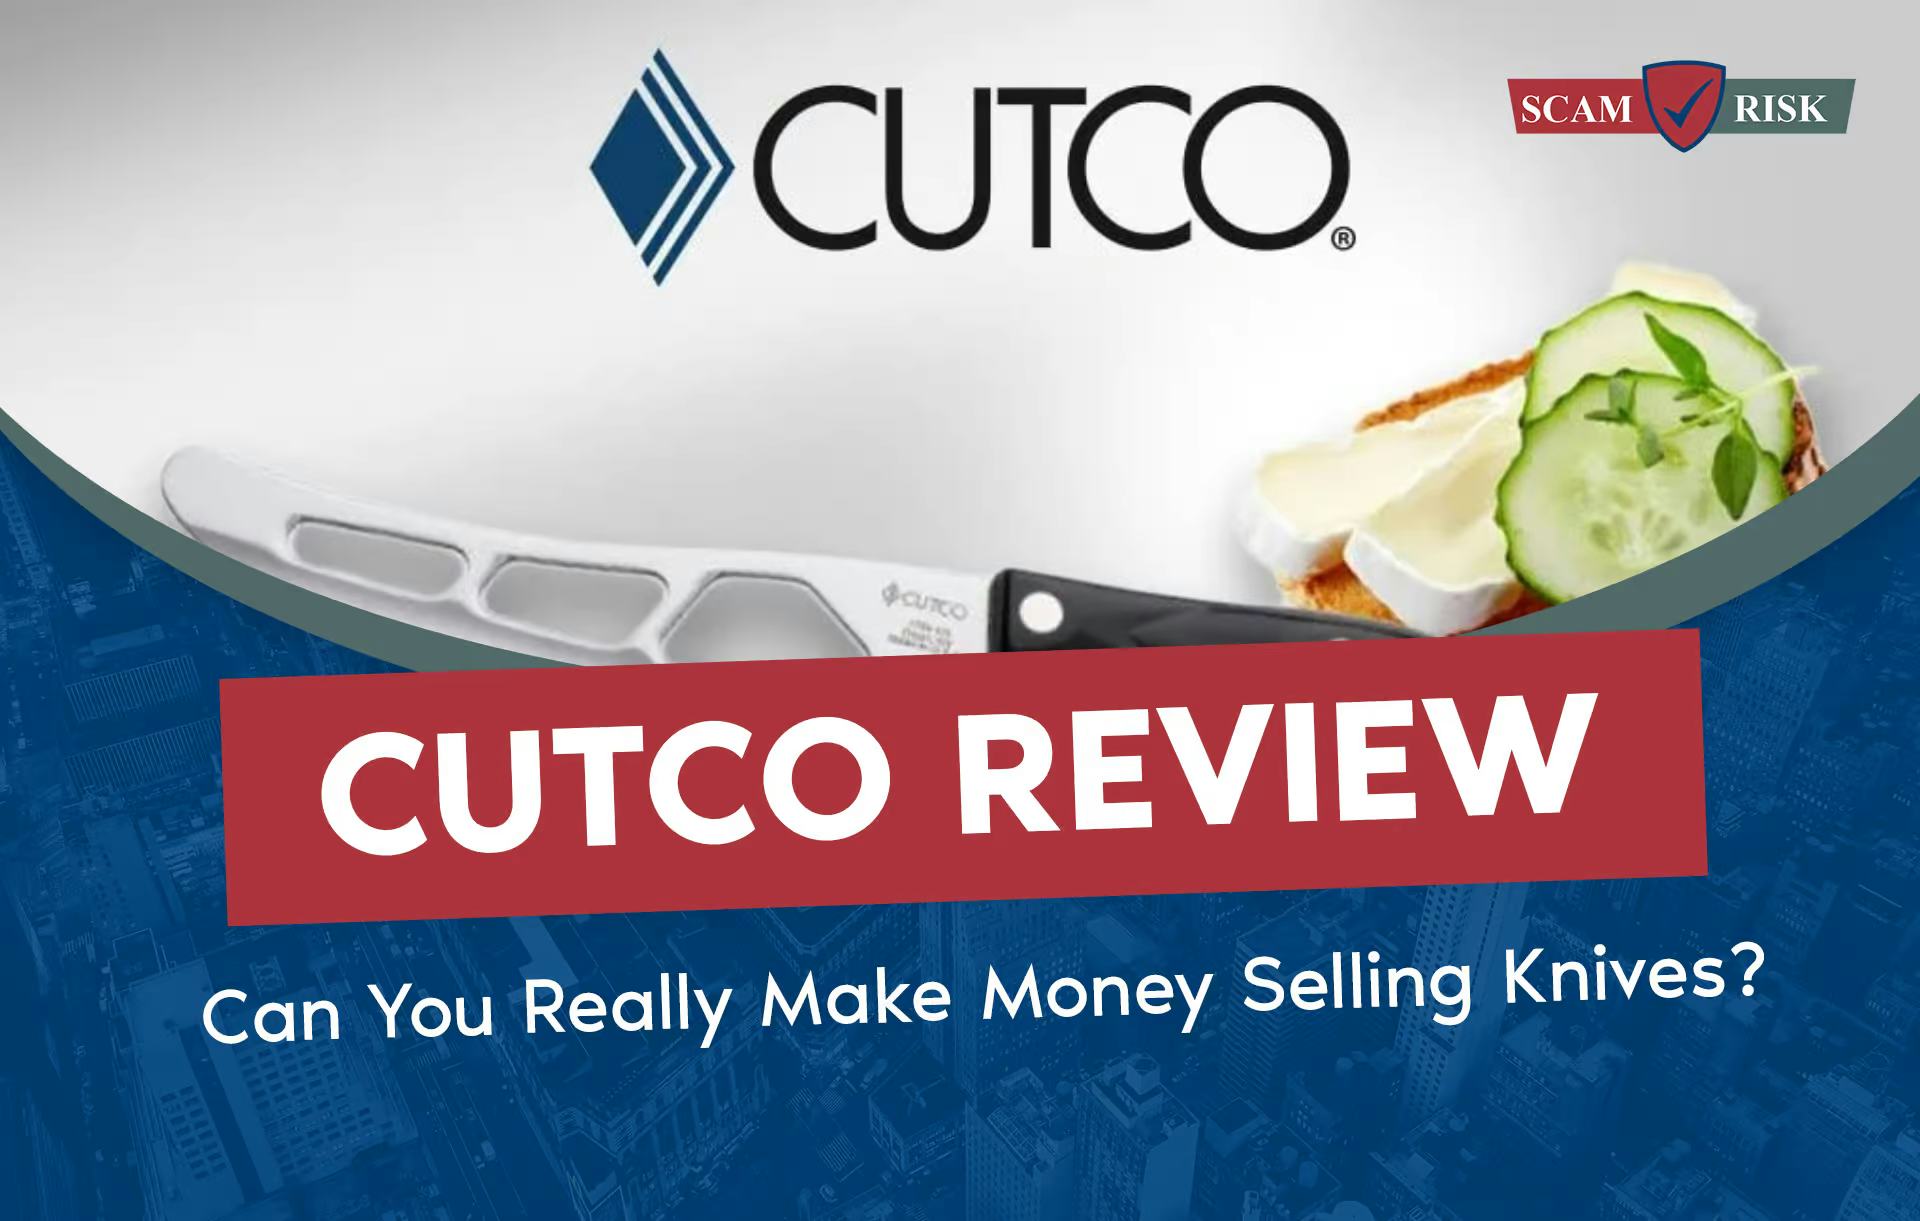 Cutco MLM Review: Is Cutco a Pyramid Scheme?